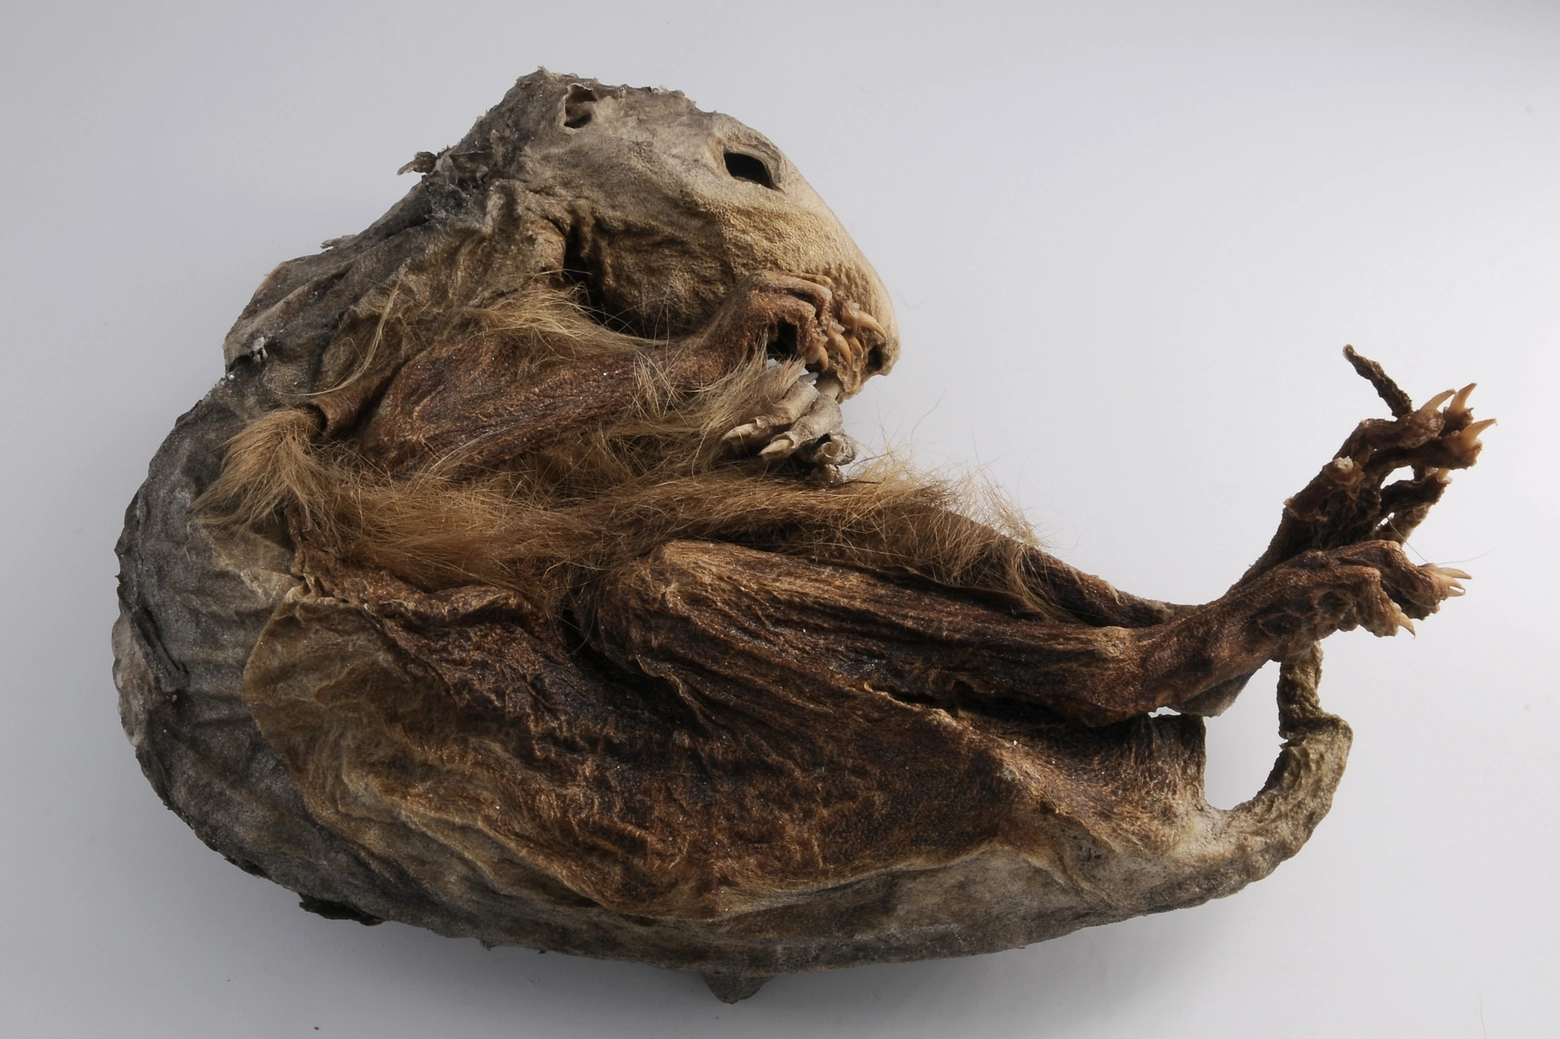 La marmotta mummificata ritrovata presso ghiacciaio non è dissimile da quelle che esistono oggi